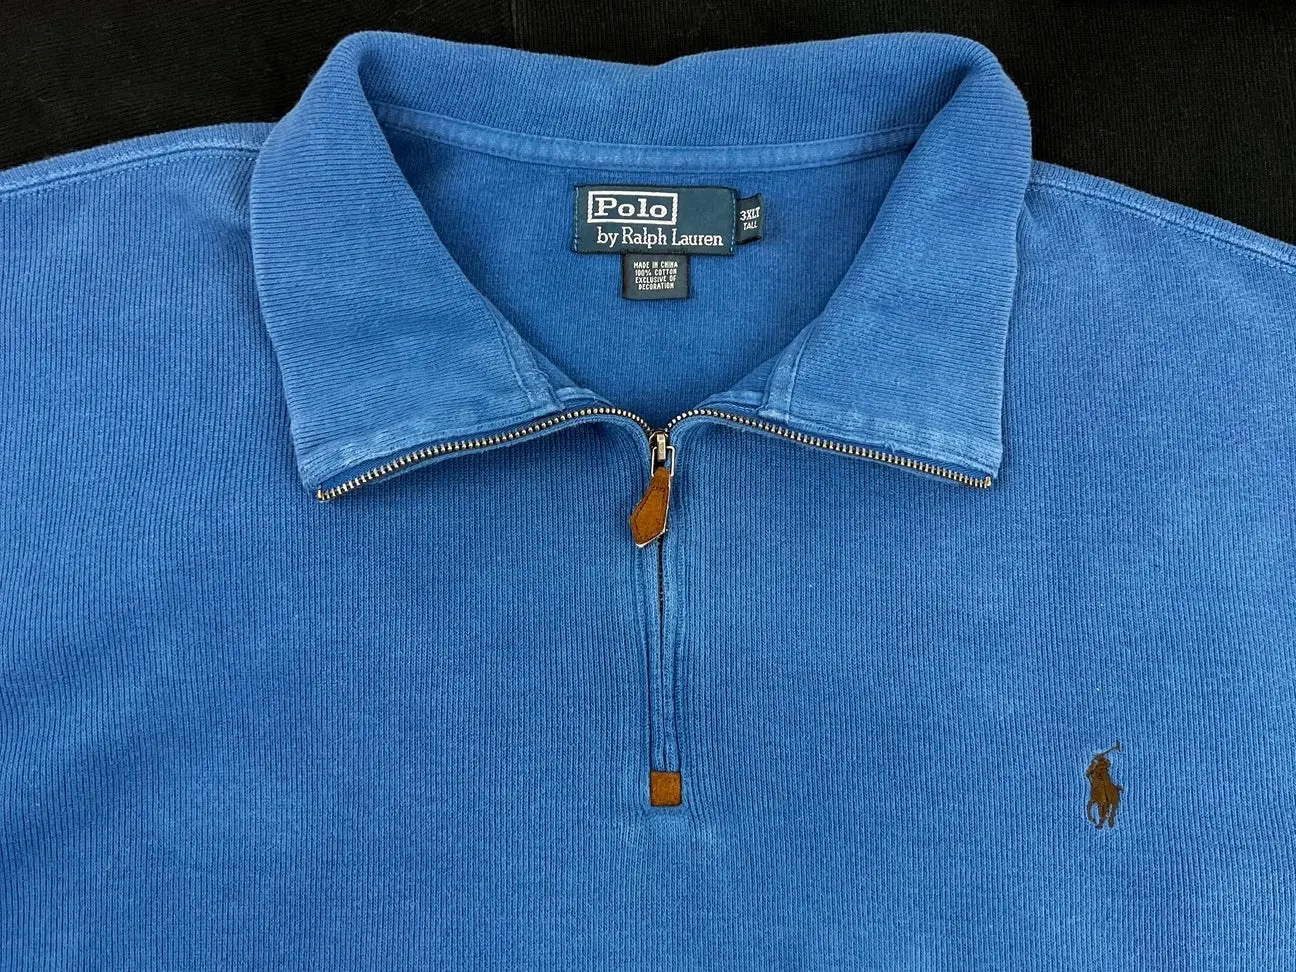 Polo Ralph Lauren sweatshirt